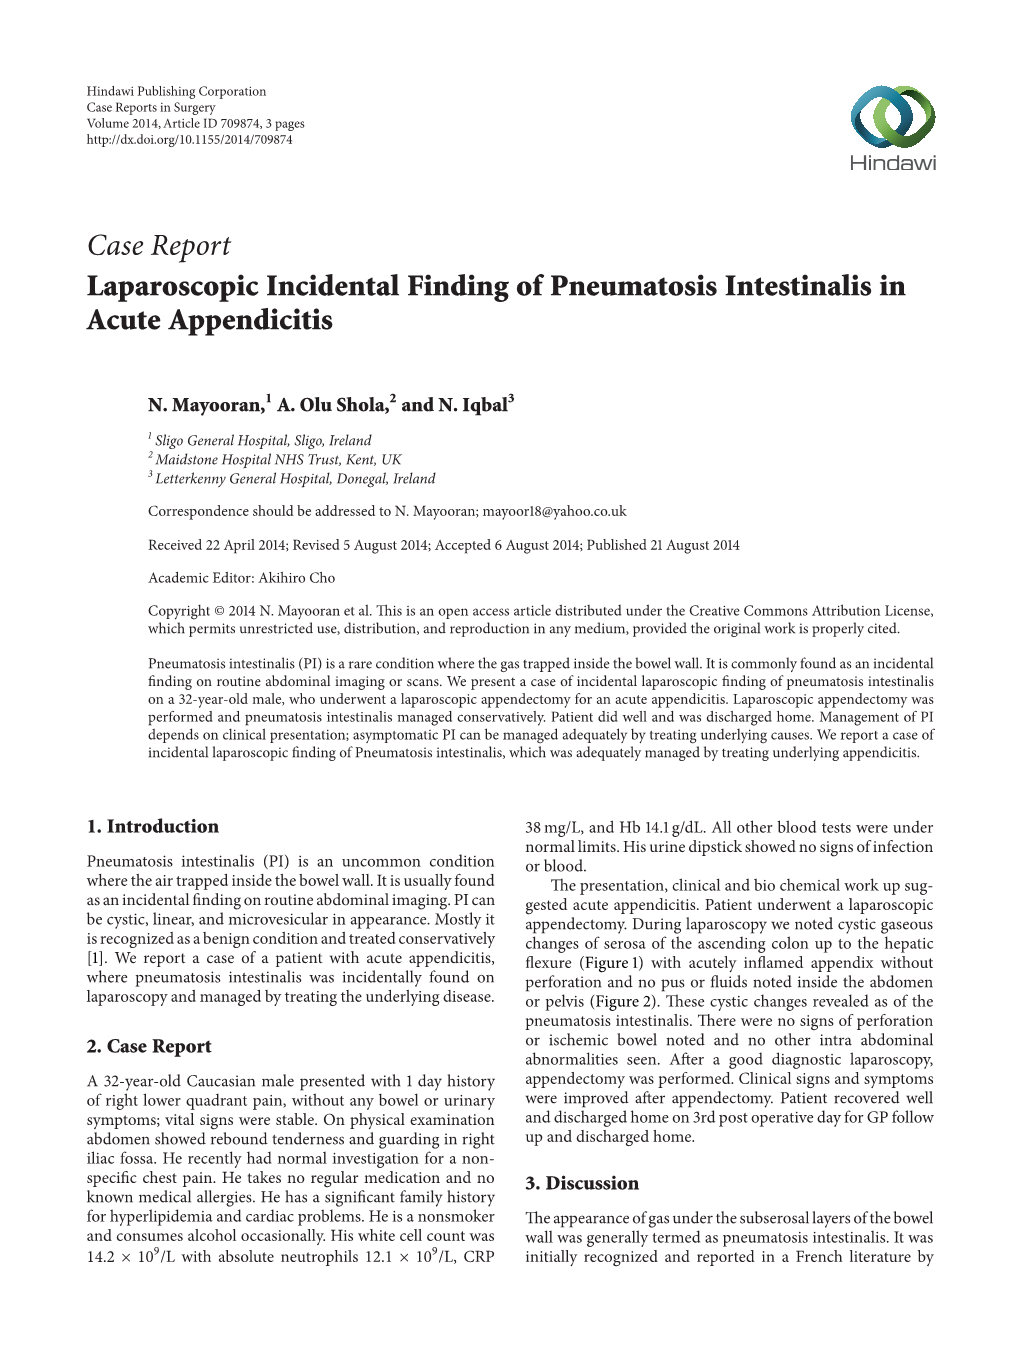 Laparoscopic Incidental Finding of Pneumatosis Intestinalis in Acute Appendicitis